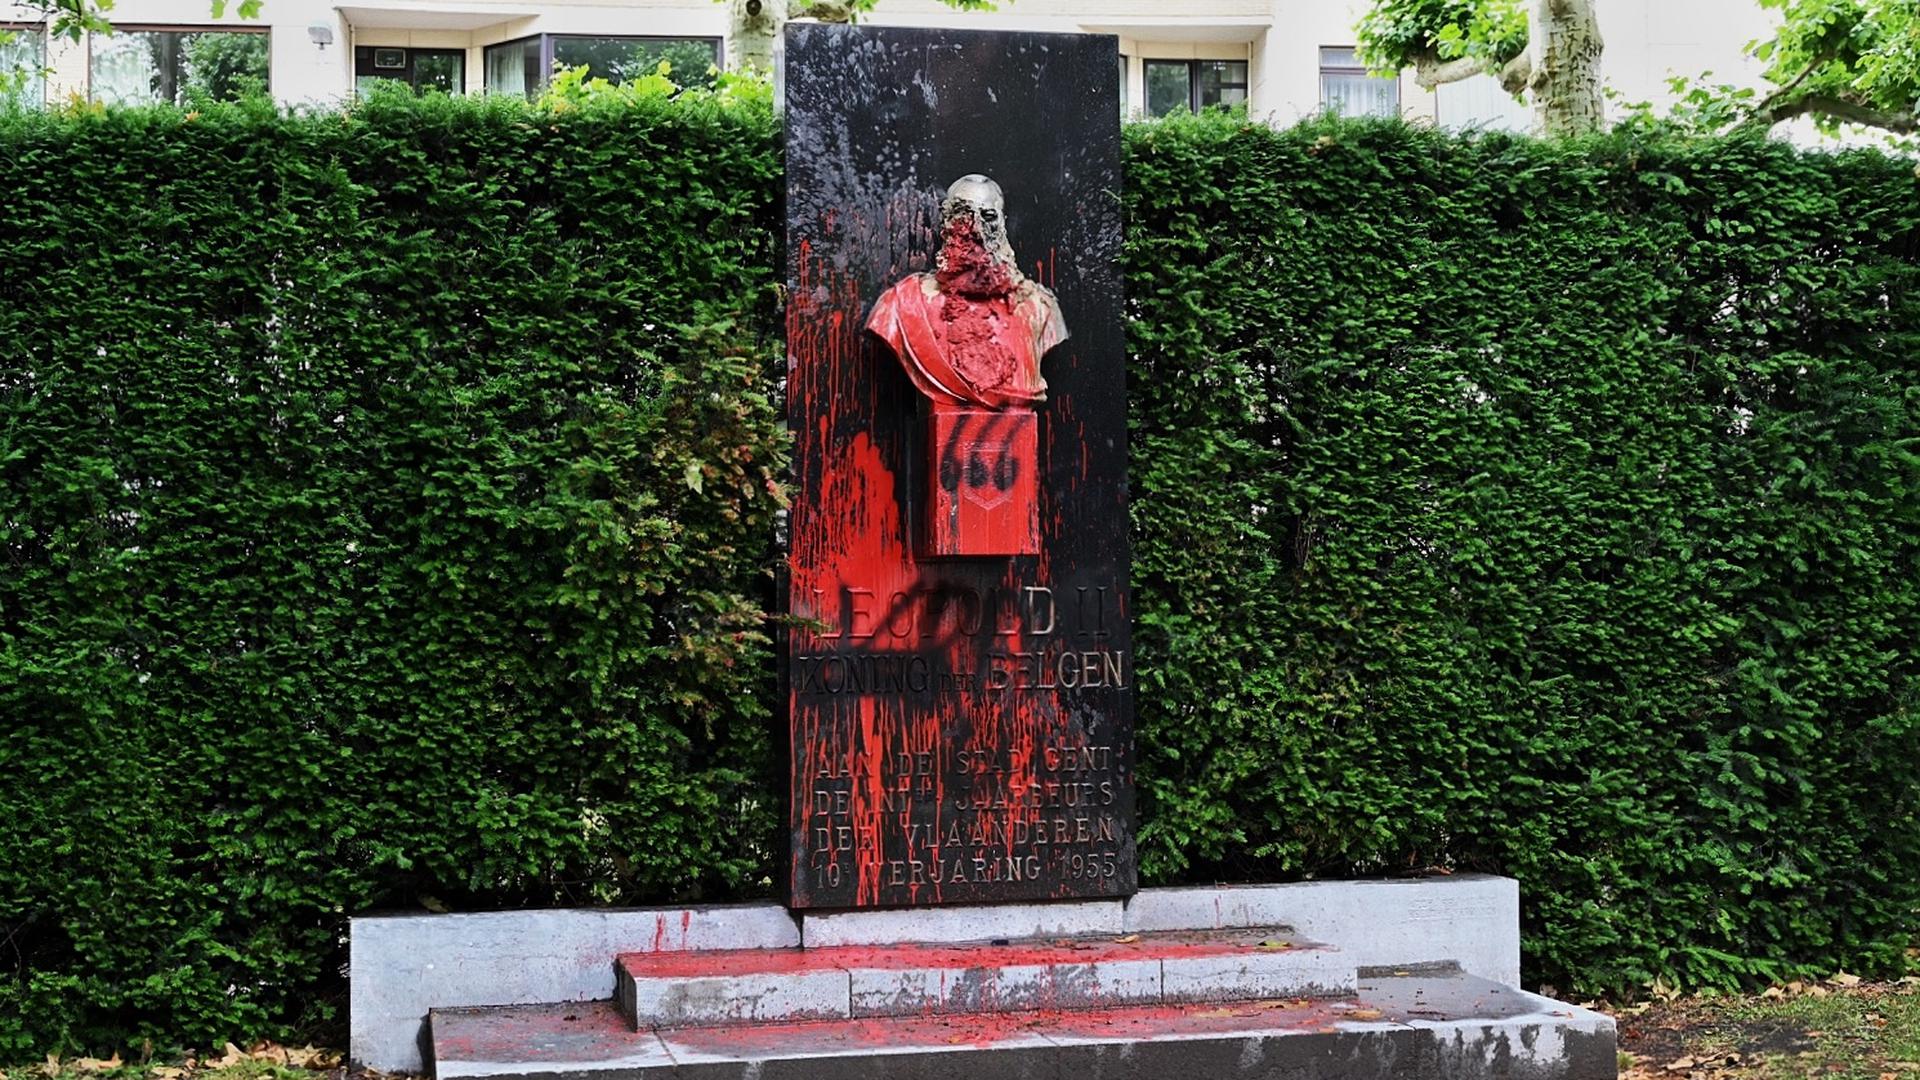 Cette photo montre une statue du roi Léopold II de Belgique salie de peinture rouge à Gand. La statue sera supprimée, au milieu des discussions pour renverser toutes les statues de Léopold II en raison des méfaits dans son ancienne colonie du Congo.